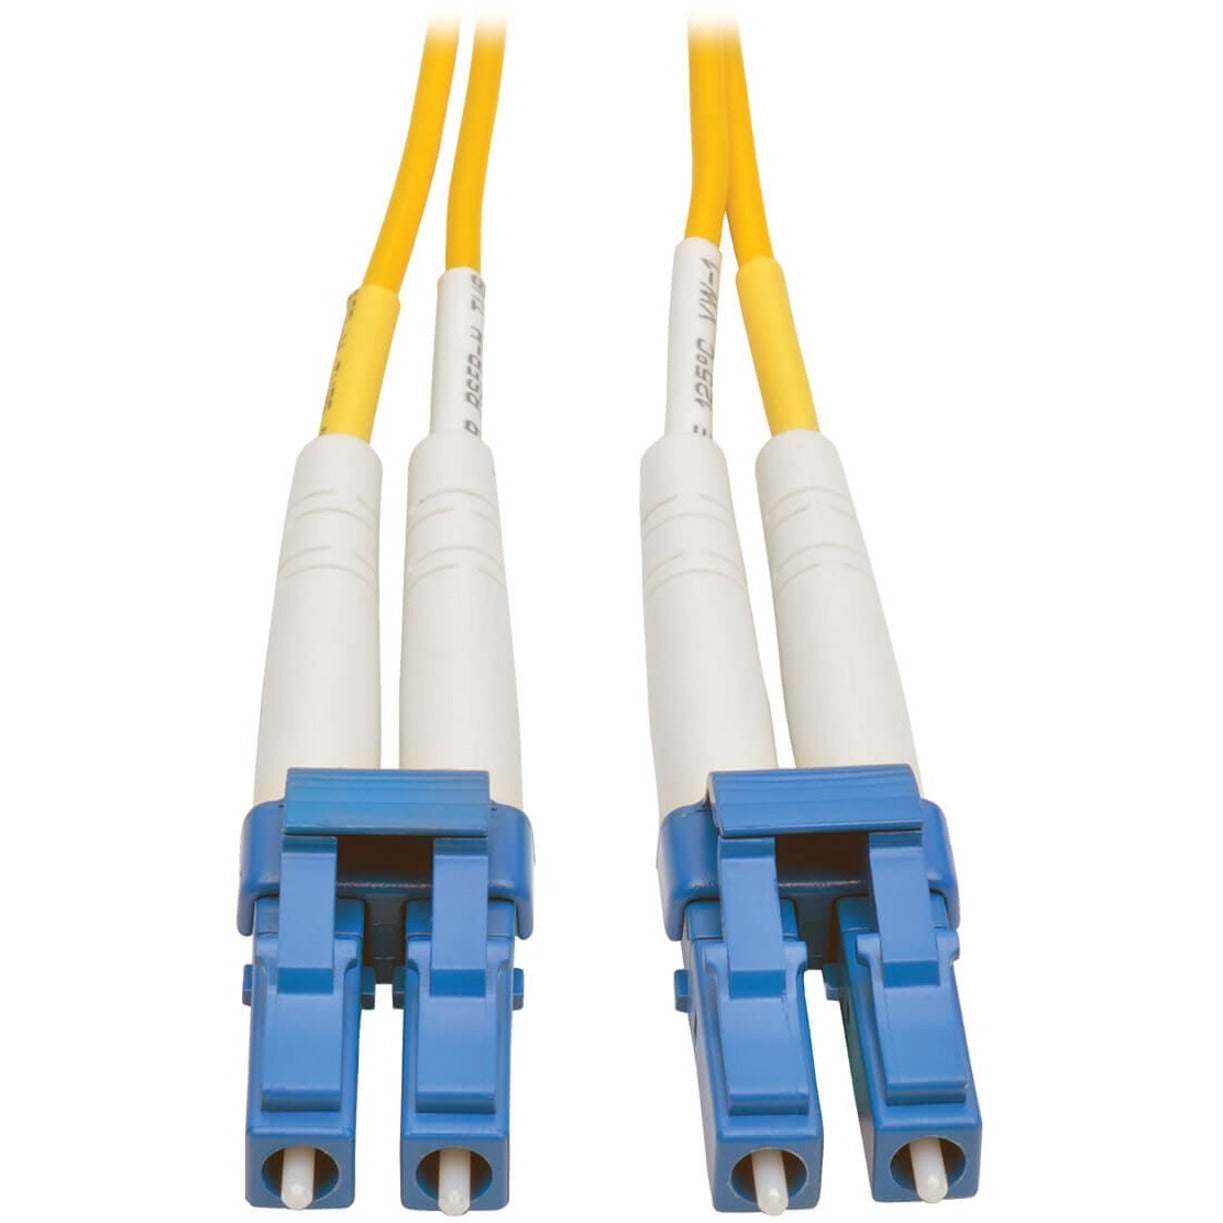 Tripp Lite: Tripp Lite N370-03M Câble de raccordement duplex en fibre optique 10 pi jaune garantie à vie